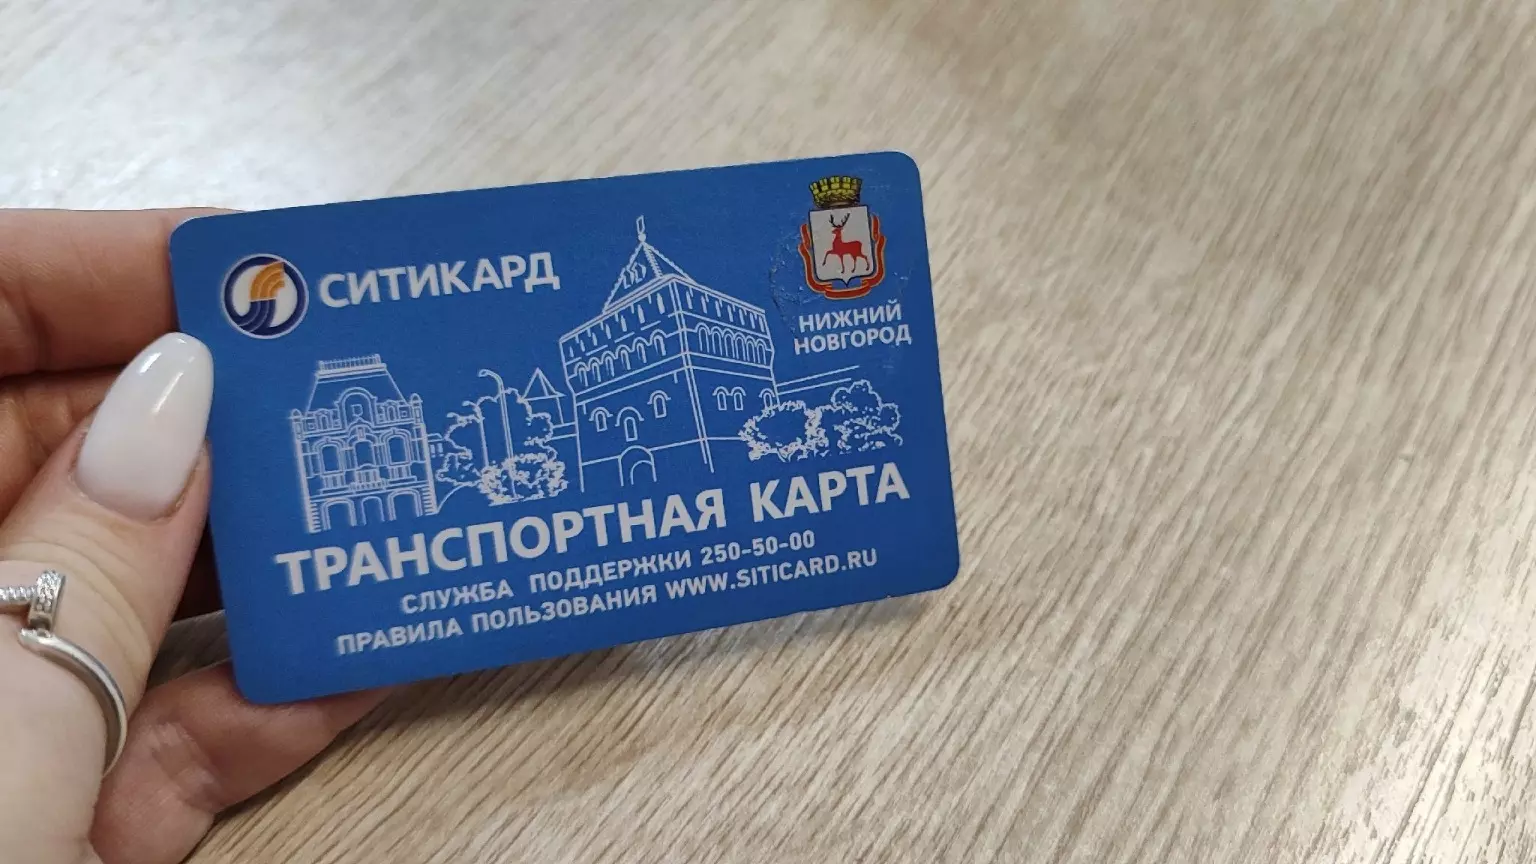 Виртуальные транспортные карты продолжают не работать в Нижнем Новгороде